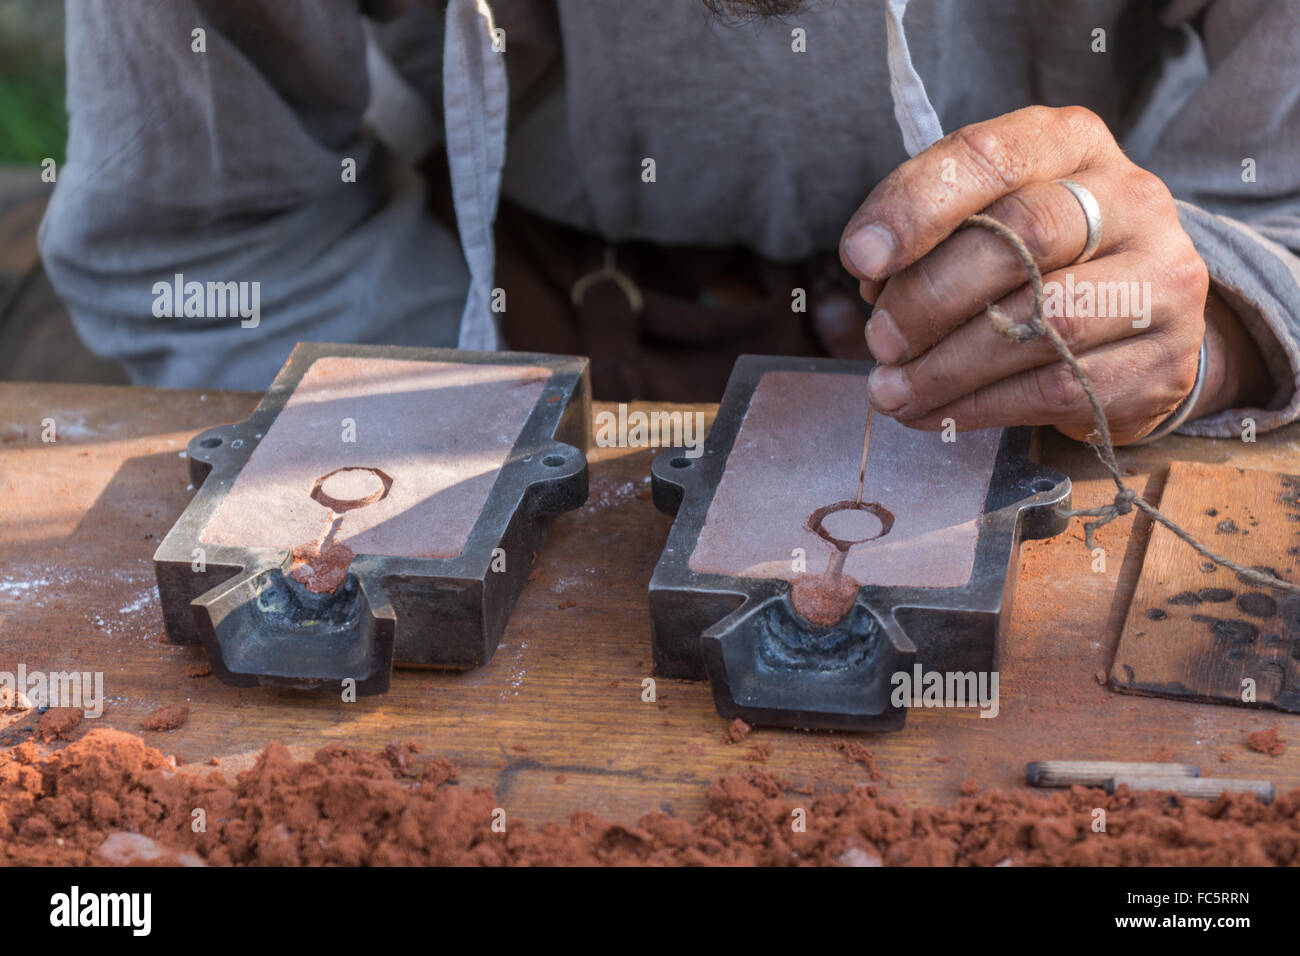 Les artisans ont formé un modèle pour coulage de métaux Banque D'Images